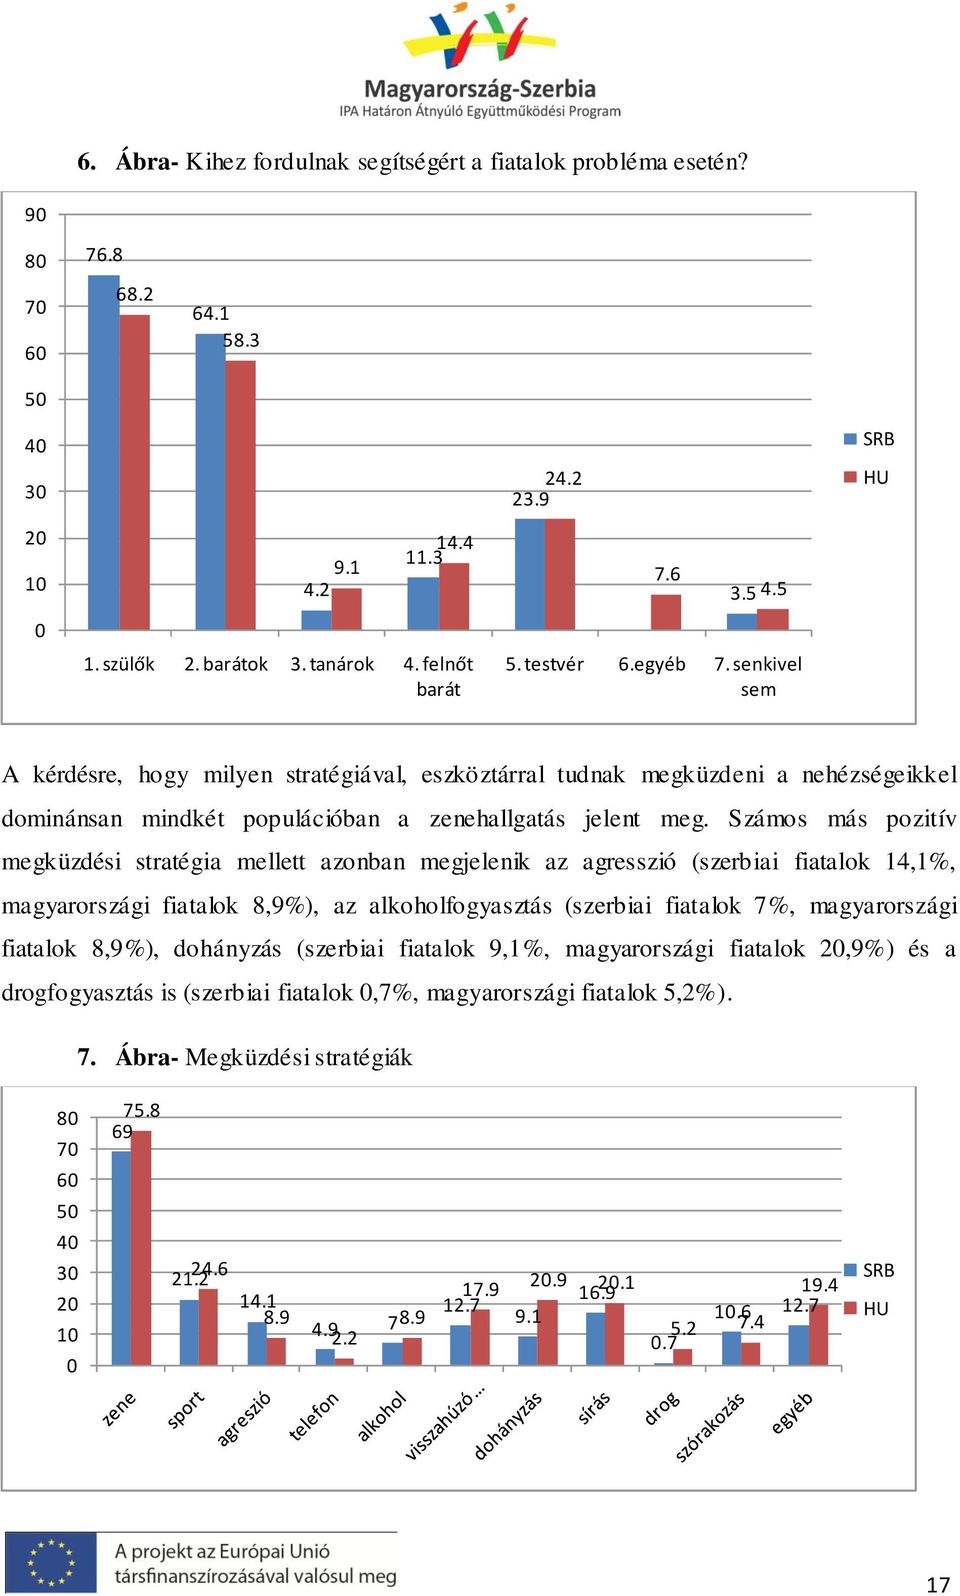 Számos más pozitív megküzdési stratégia mellett azonban megjelenik az agresszió (szerbiai fiatalok 14,1%, magyarországi fiatalok 8,9%), az alkoholfogyasztás (szerbiai fiatalok 7%, magyarországi